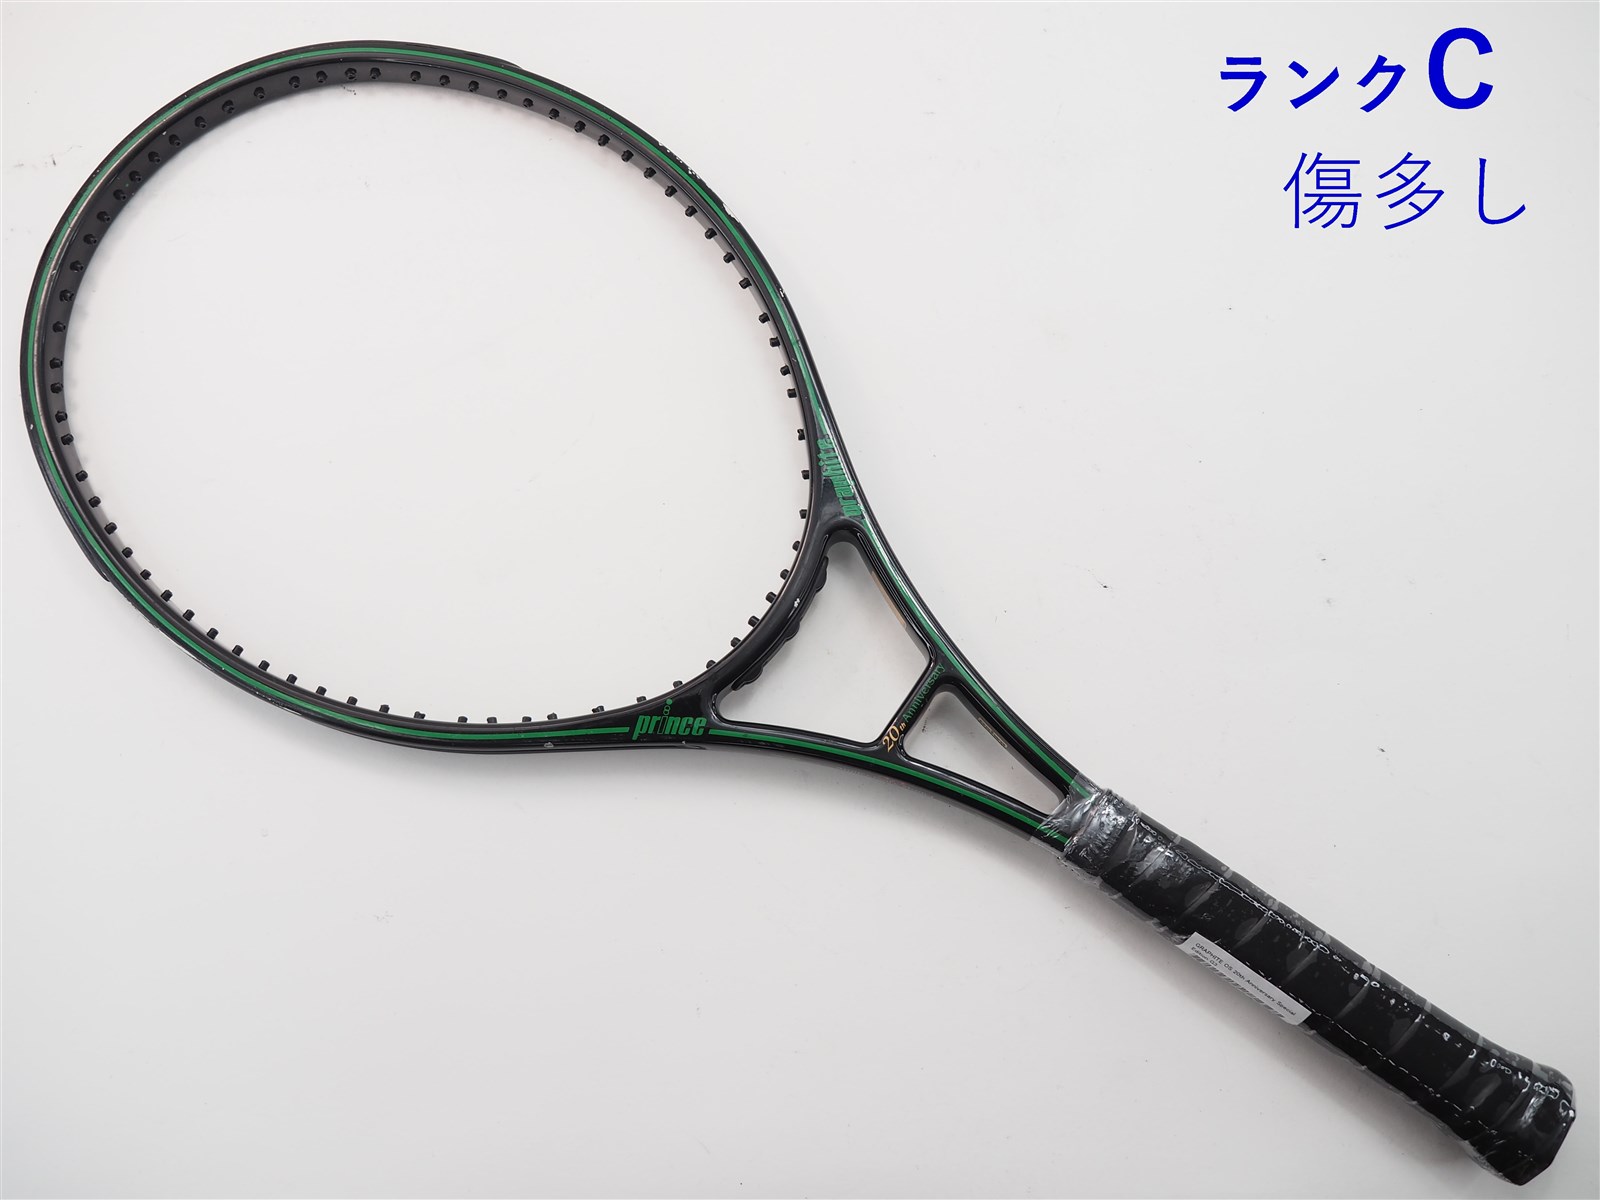 テニスラケット プリンス プリンス エックス 105 (290g) 2018年モデル (G2)PRINCE Prince X 105 (290g) 2018